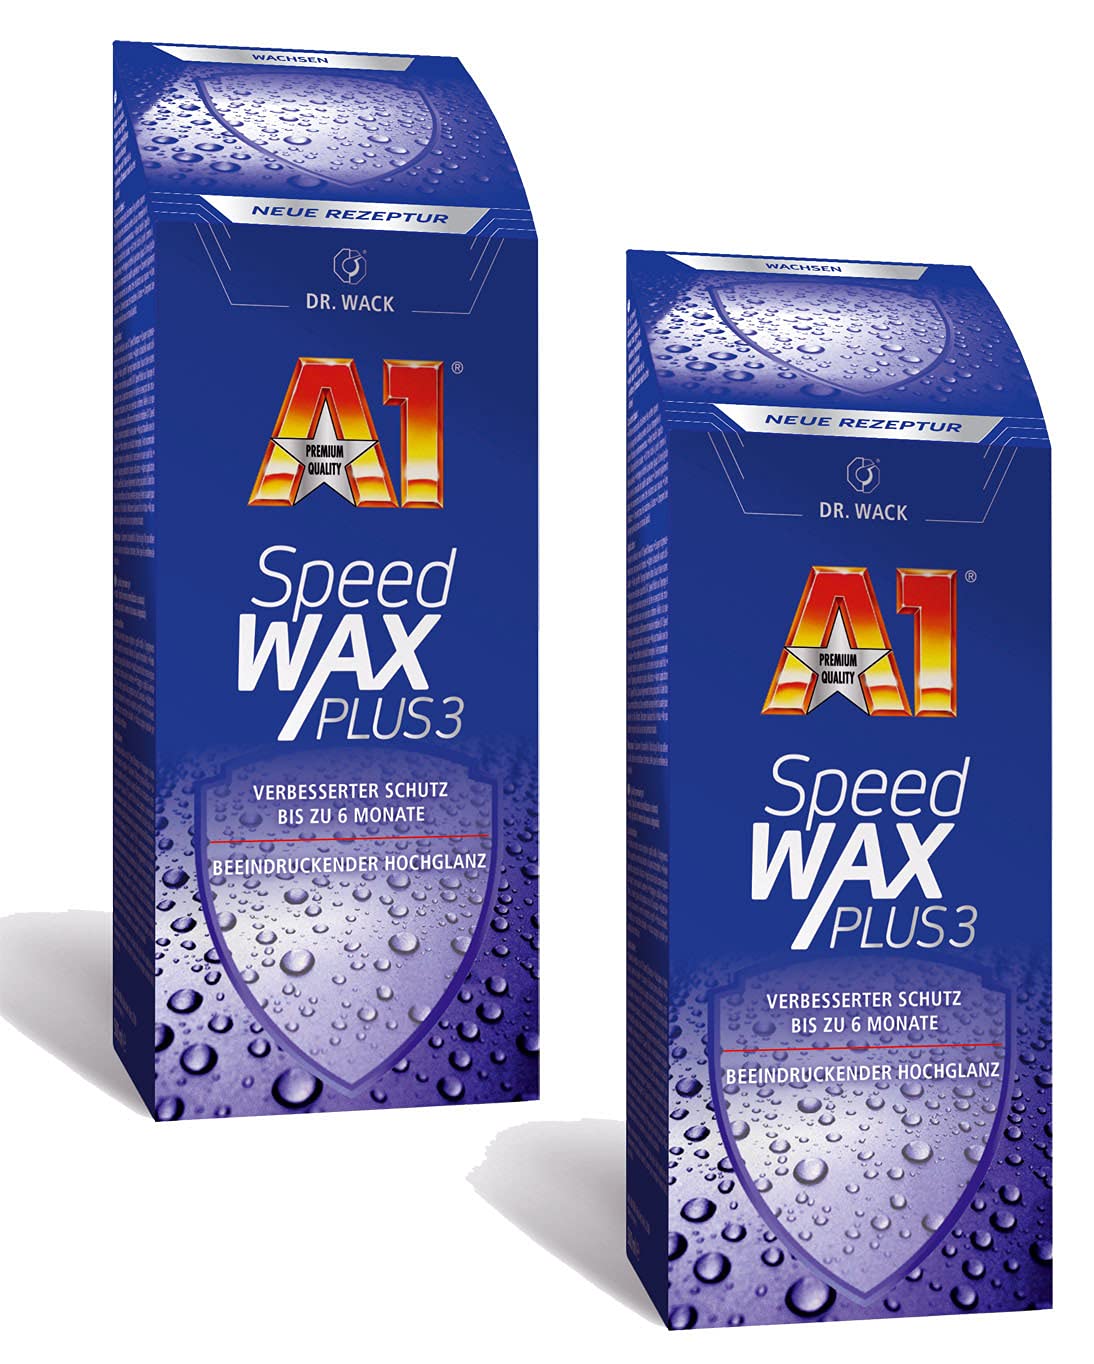 ILODA 2X 250ml Dr. Wack A1 Speed Wax Plus 3, Auto-Hartwachs, Auto-Wachs, Lackschutz, Lackversiegelung, Carnauba-Wachs mit extrem langanhaltenden Wasser-Abperl-Effekt für alle Lacke von ILODA